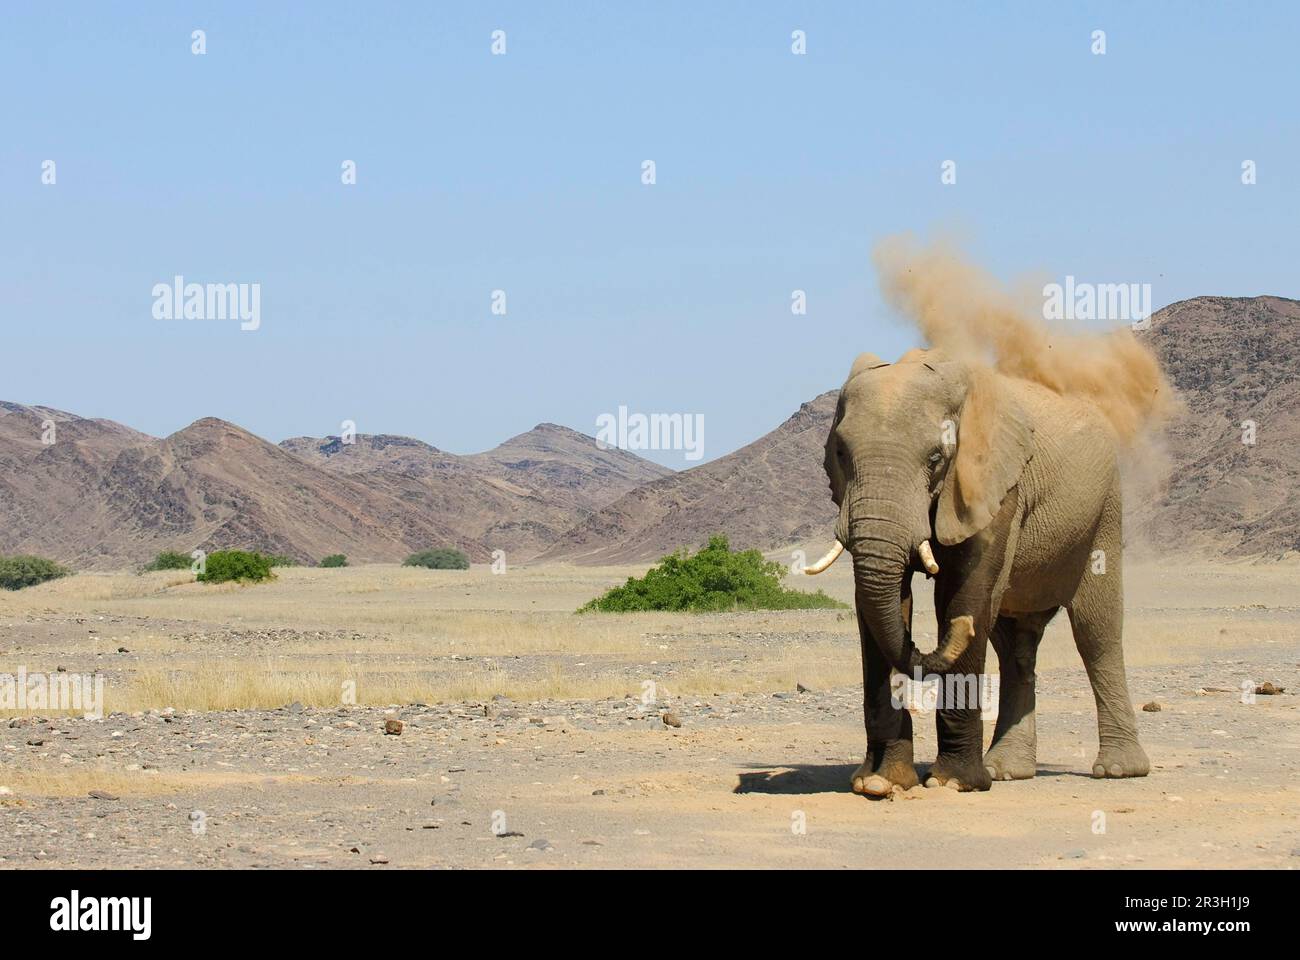 Elefante africano (Loxodonta africana) elefante, elefanti, mammiferi, animali elefante adulto, spolverata, gettare sabbia con tronco, in piedi su arido Foto Stock